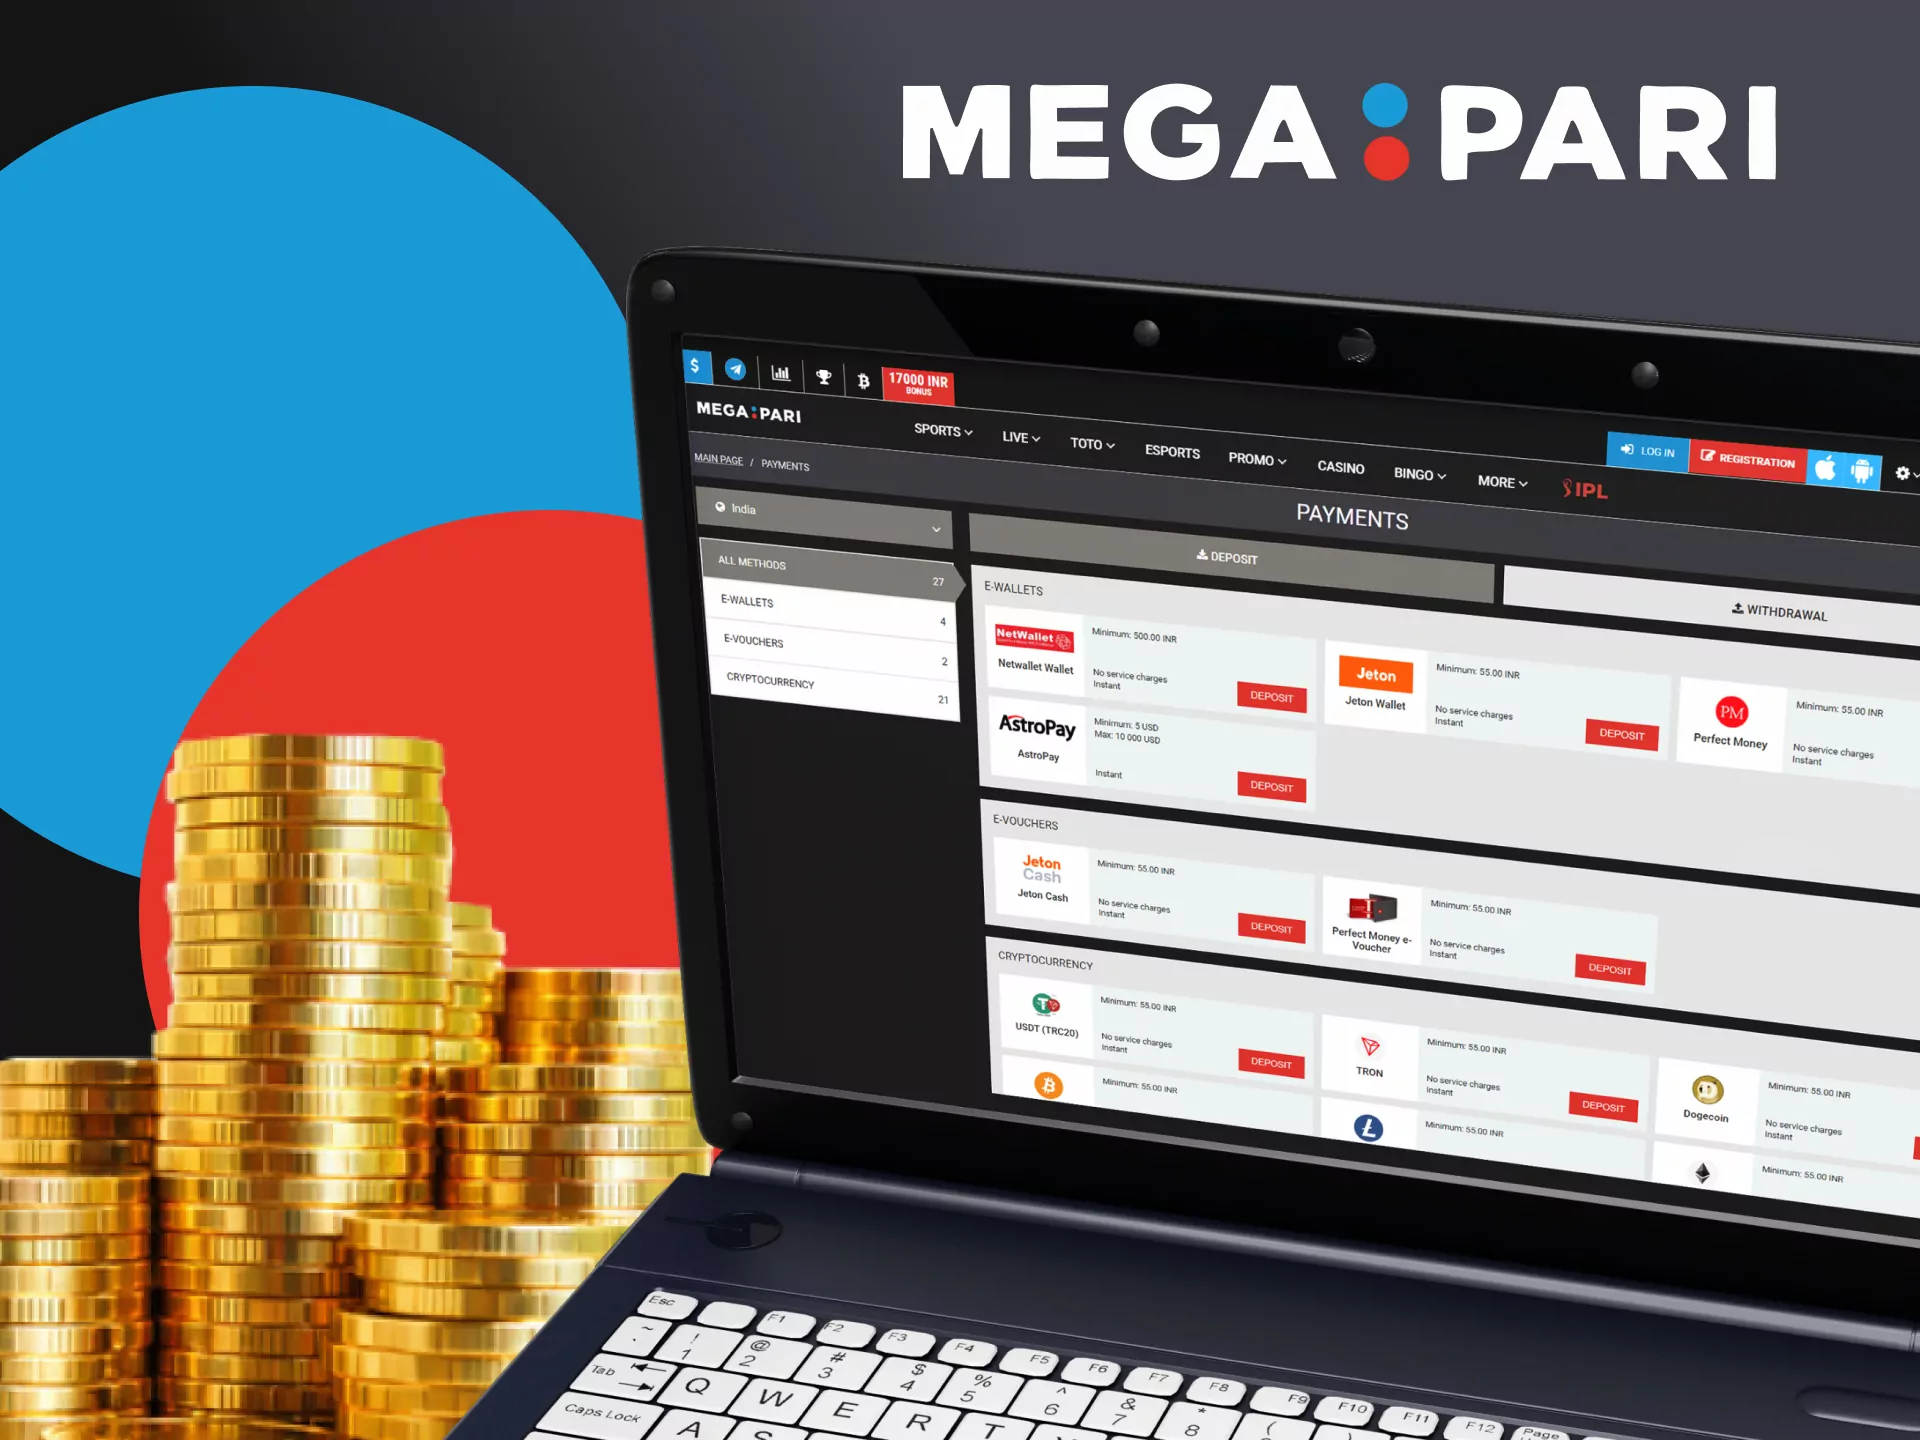 The deposit process on Megapari is very simple.